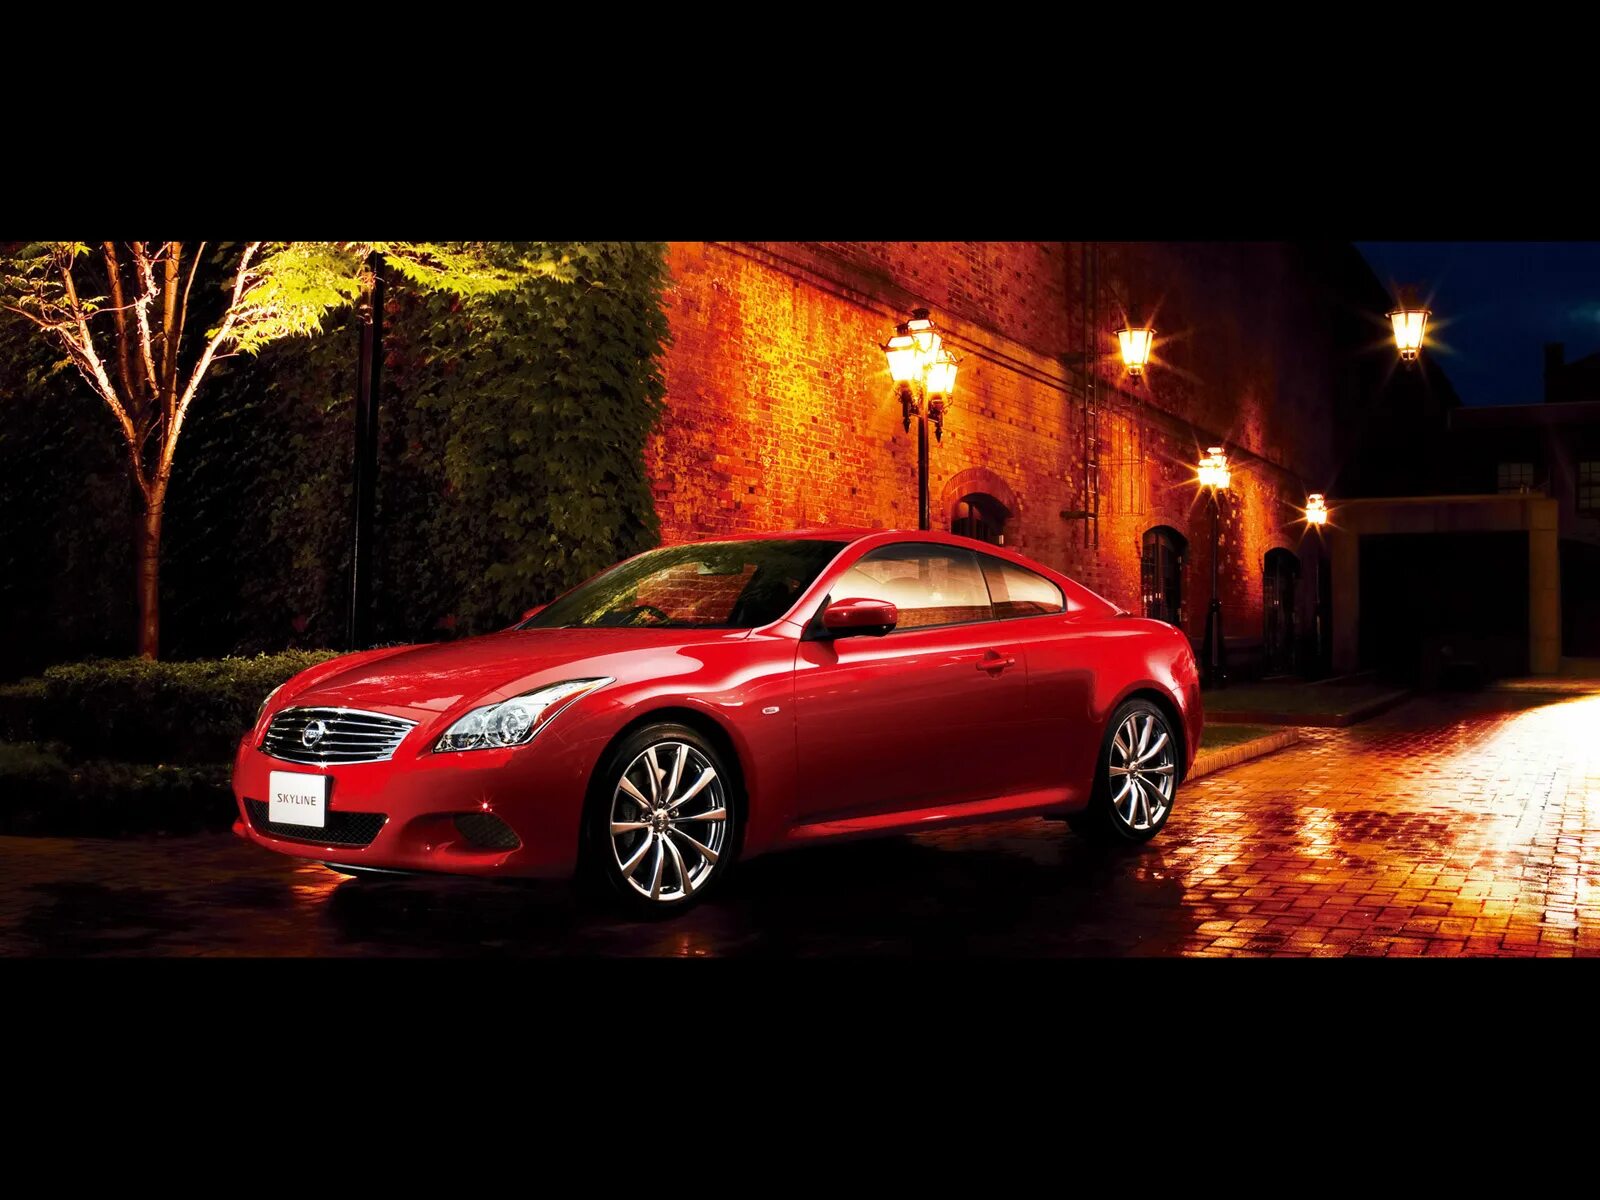 Машины точка ру. Nissan Skyline Coupe Red. Красный ночной седан. Модель моделька Скайлайна. Красная машина под дождем.